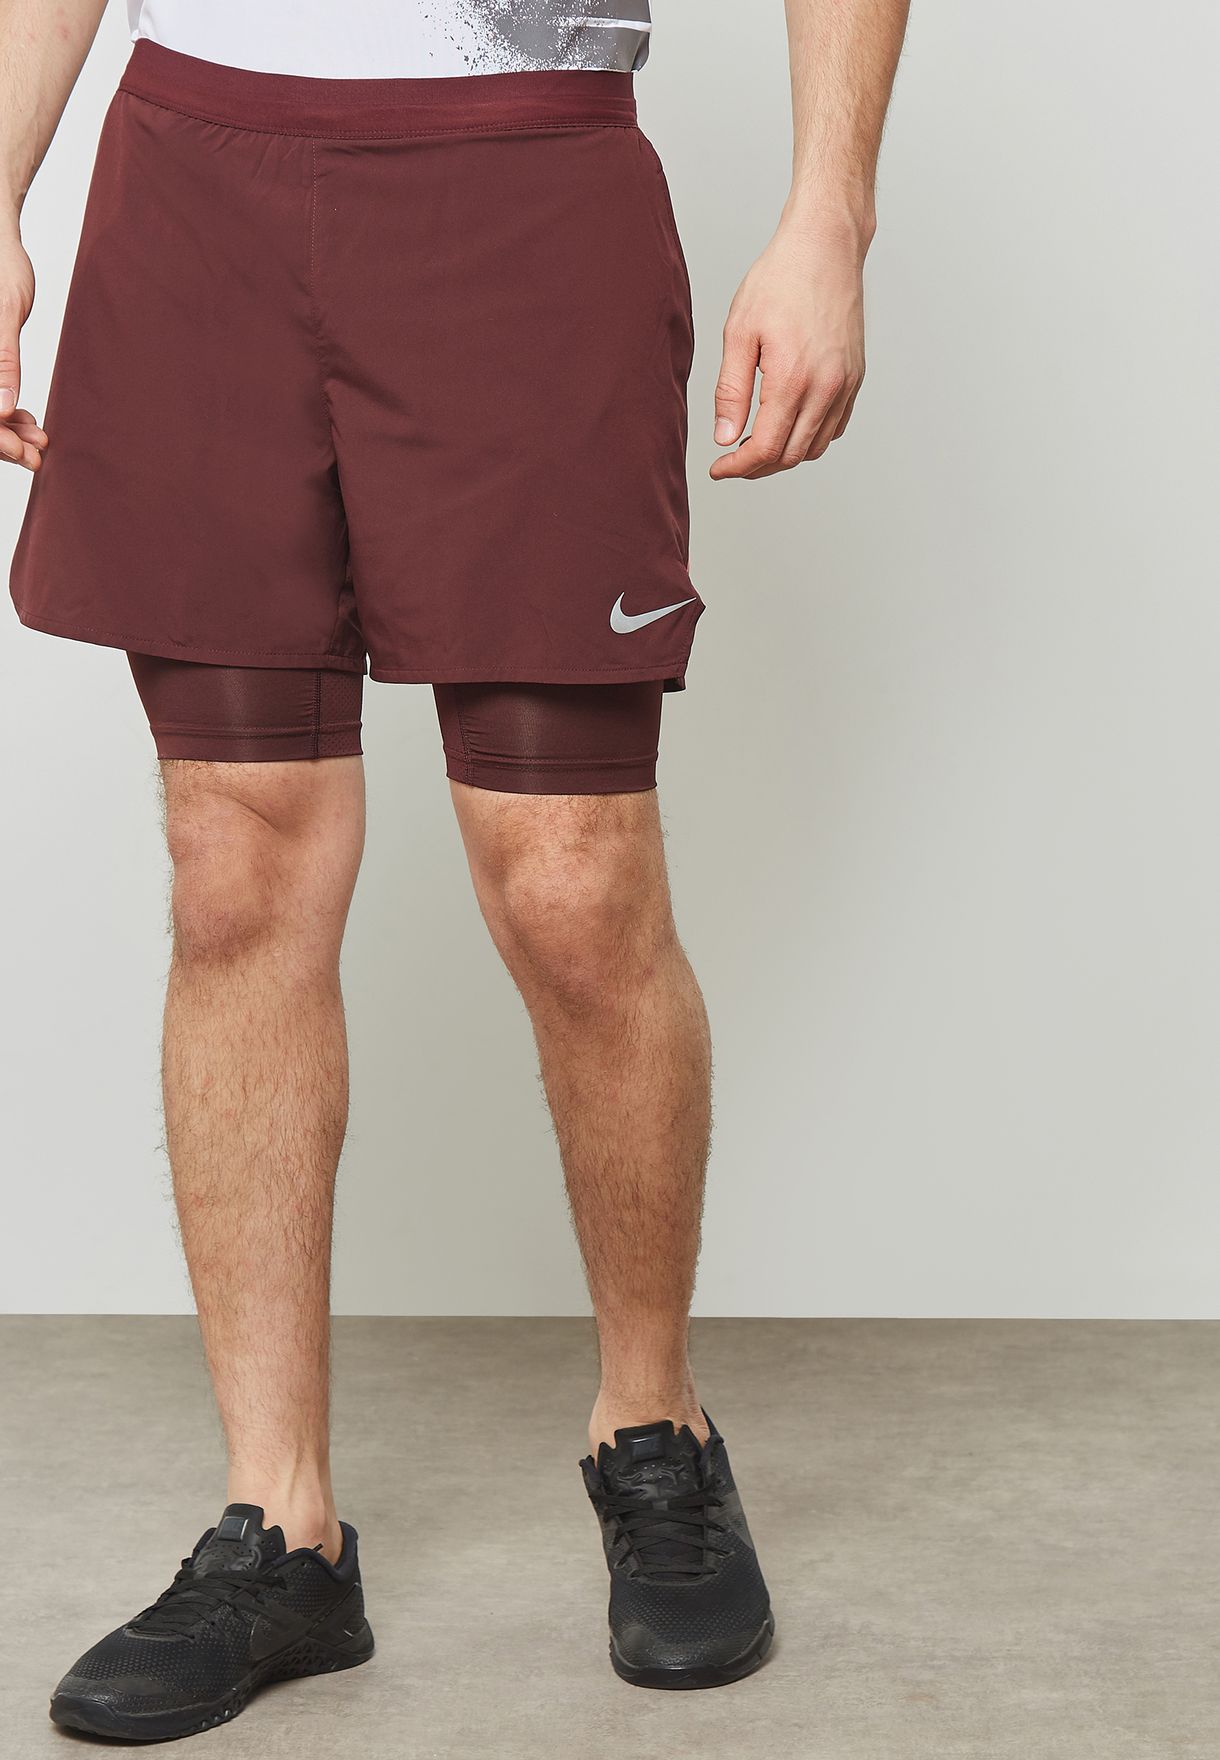 nike shorts burgundy